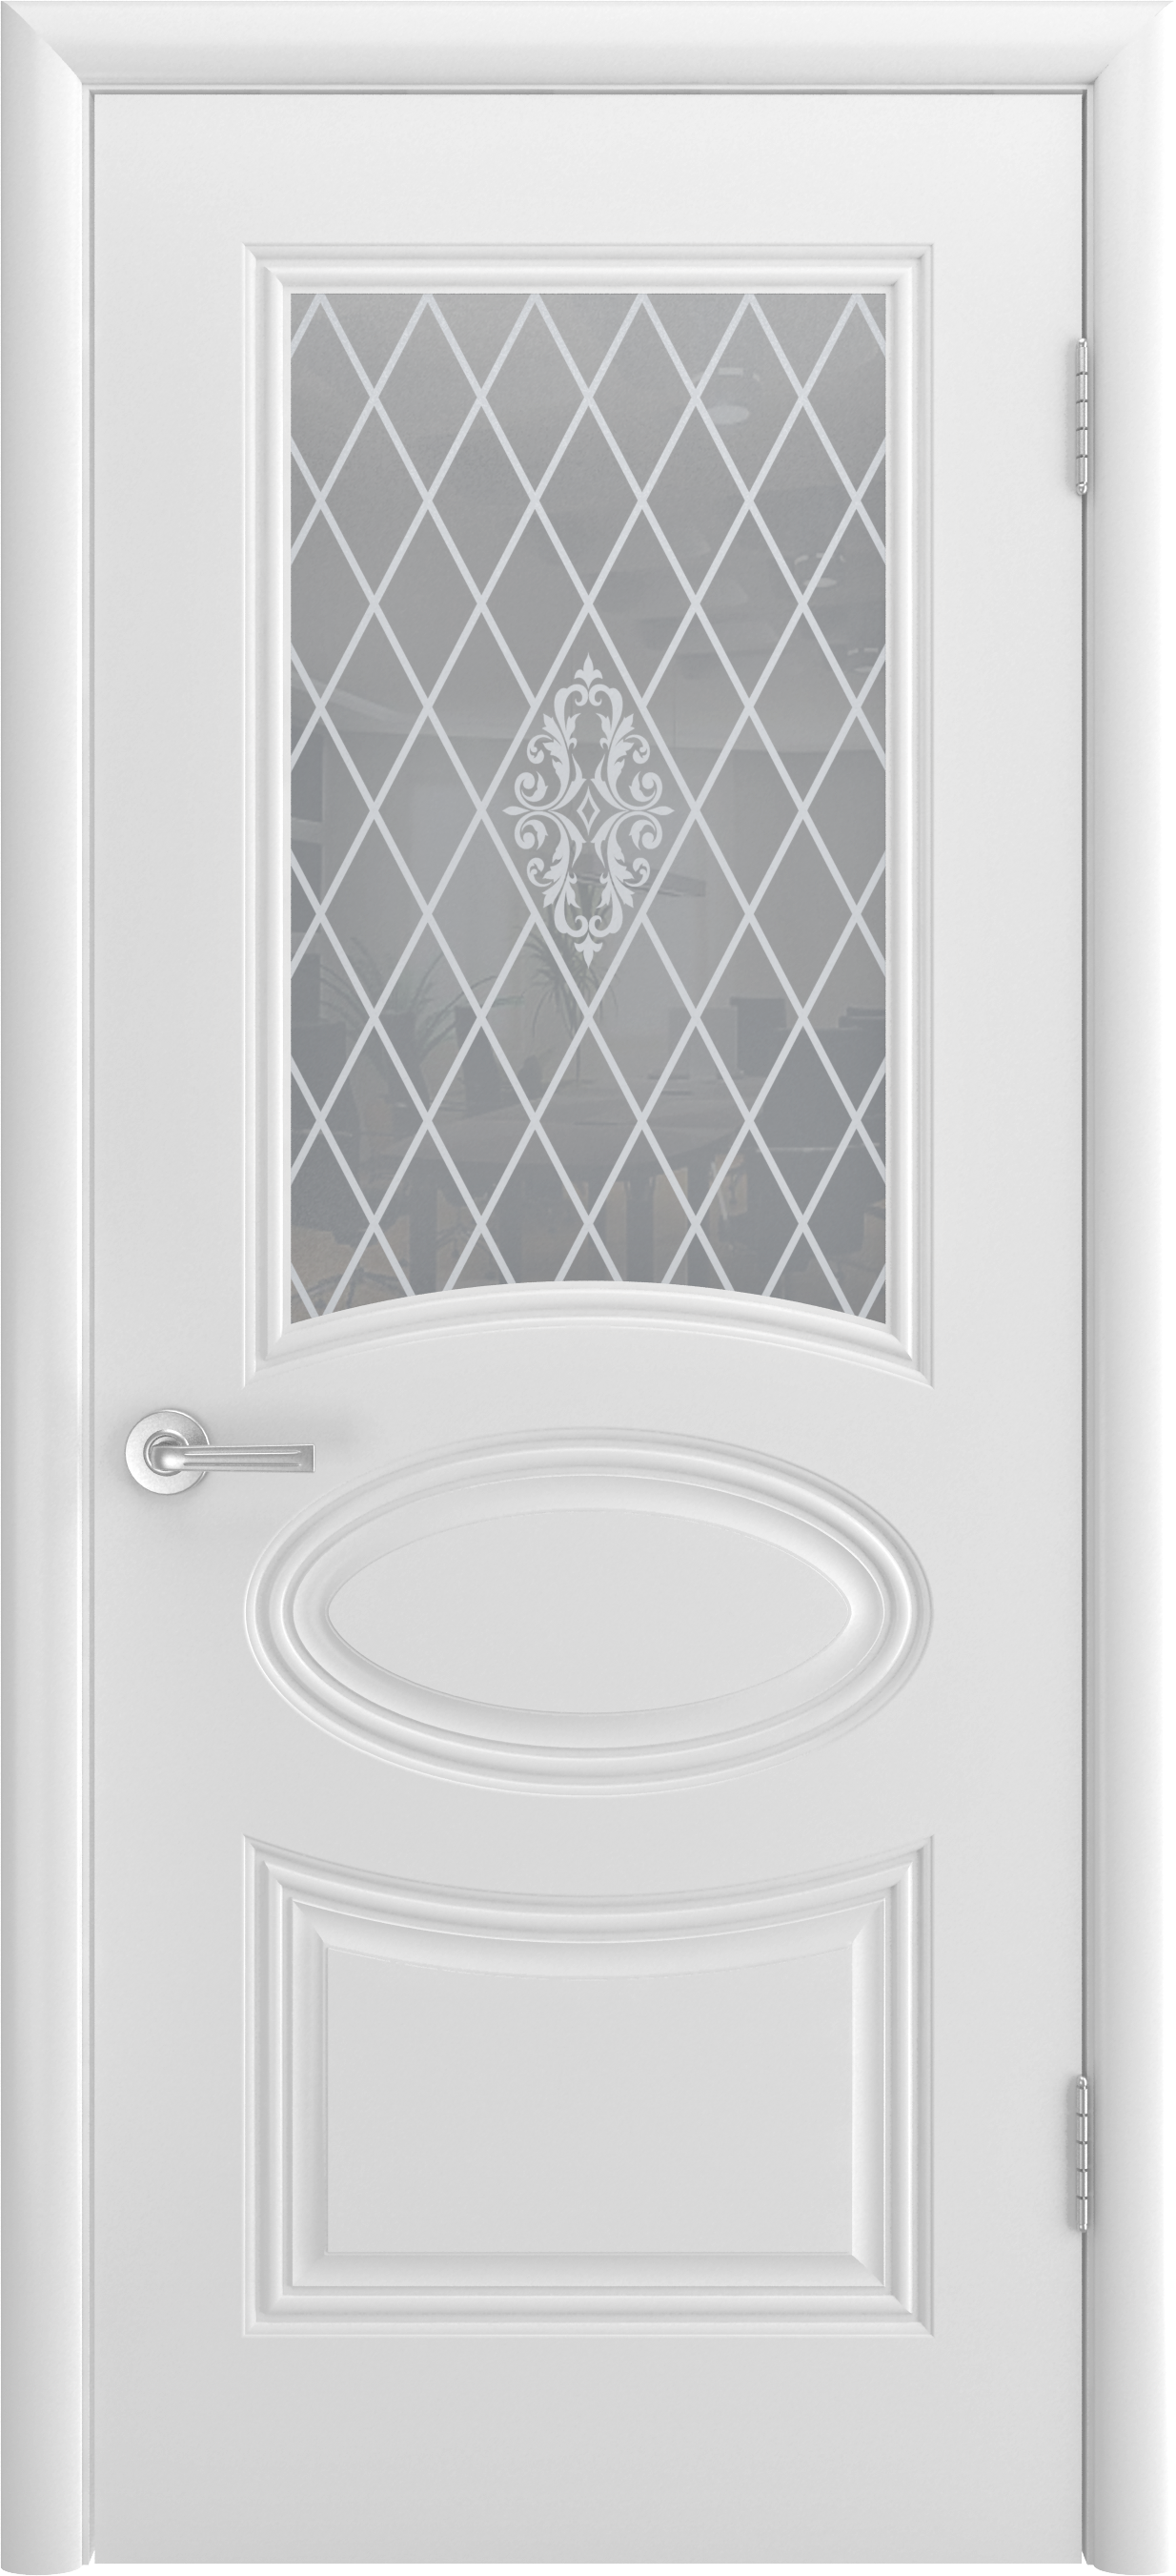 Дверь классика стекло. Трио Грейс в1 белая эмаль. Межкомнатная дверь Ария Грэйс 2 ПГ (белая эмаль/патина серебро). Дверь Аккорд ПГ эмаль белая. Двери шикодорс трио Грейс глухая с патиной серебро.